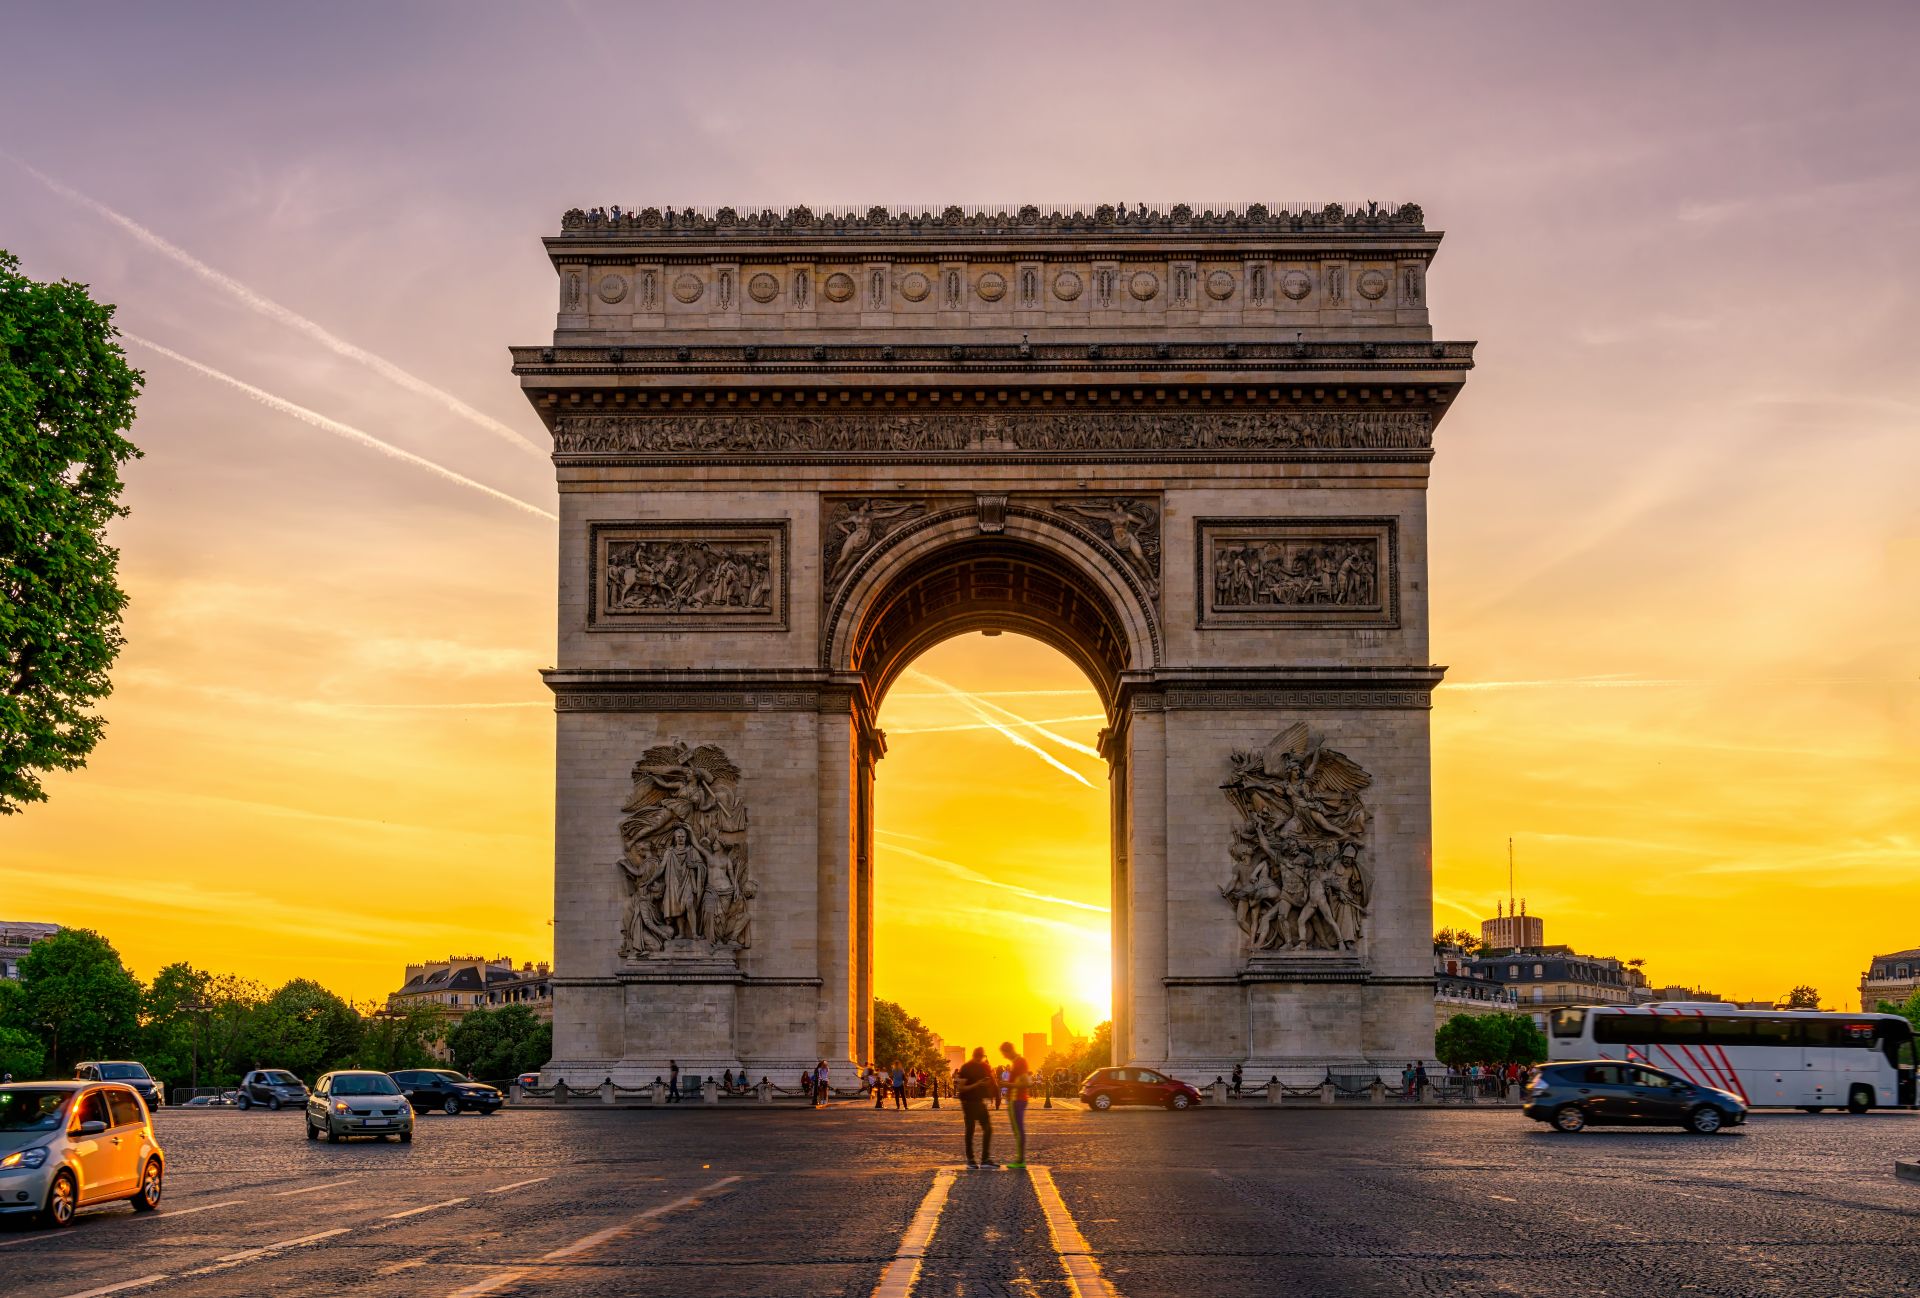 Paris Arc de Triomphe on Champs Elysees